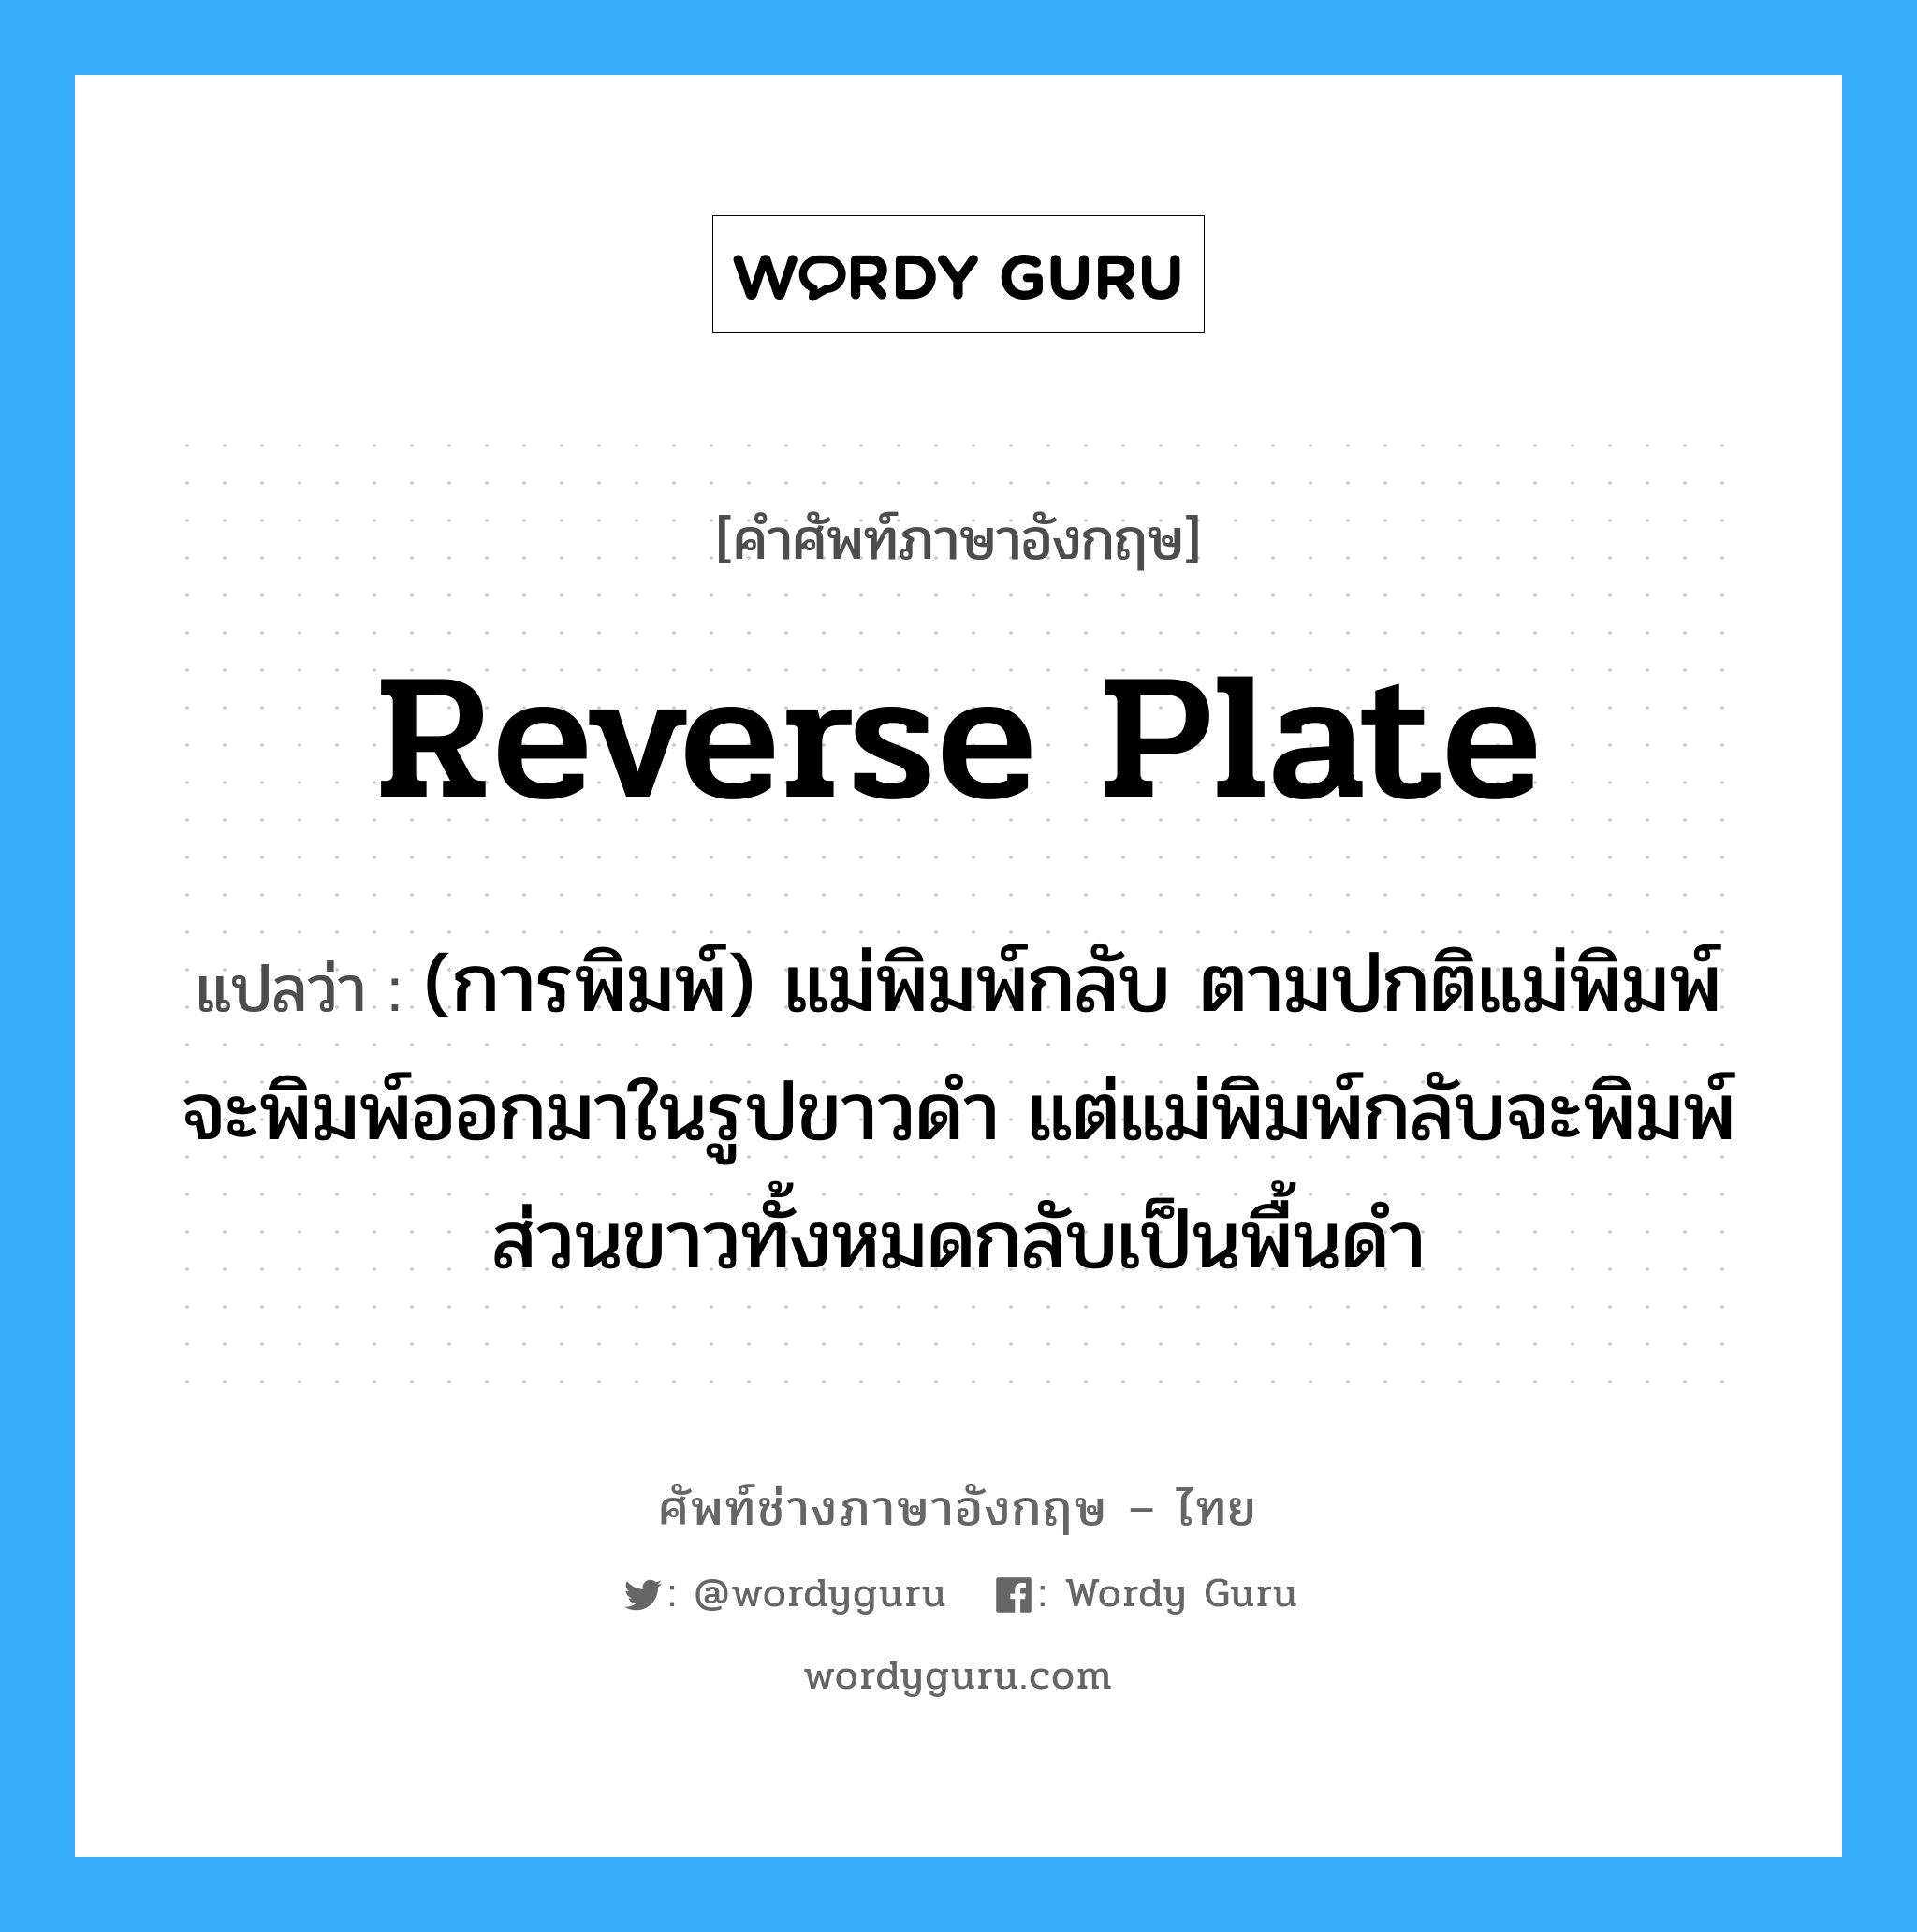 reverse plate แปลว่า?, คำศัพท์ช่างภาษาอังกฤษ - ไทย reverse plate คำศัพท์ภาษาอังกฤษ reverse plate แปลว่า (การพิมพ์) แม่พิมพ์กลับ ตามปกติแม่พิมพ์จะพิมพ์ออกมาในรูปขาวดำ แต่แม่พิมพ์กลับจะพิมพ์ส่วนขาวทั้งหมดกลับเป็นพื้นดำ